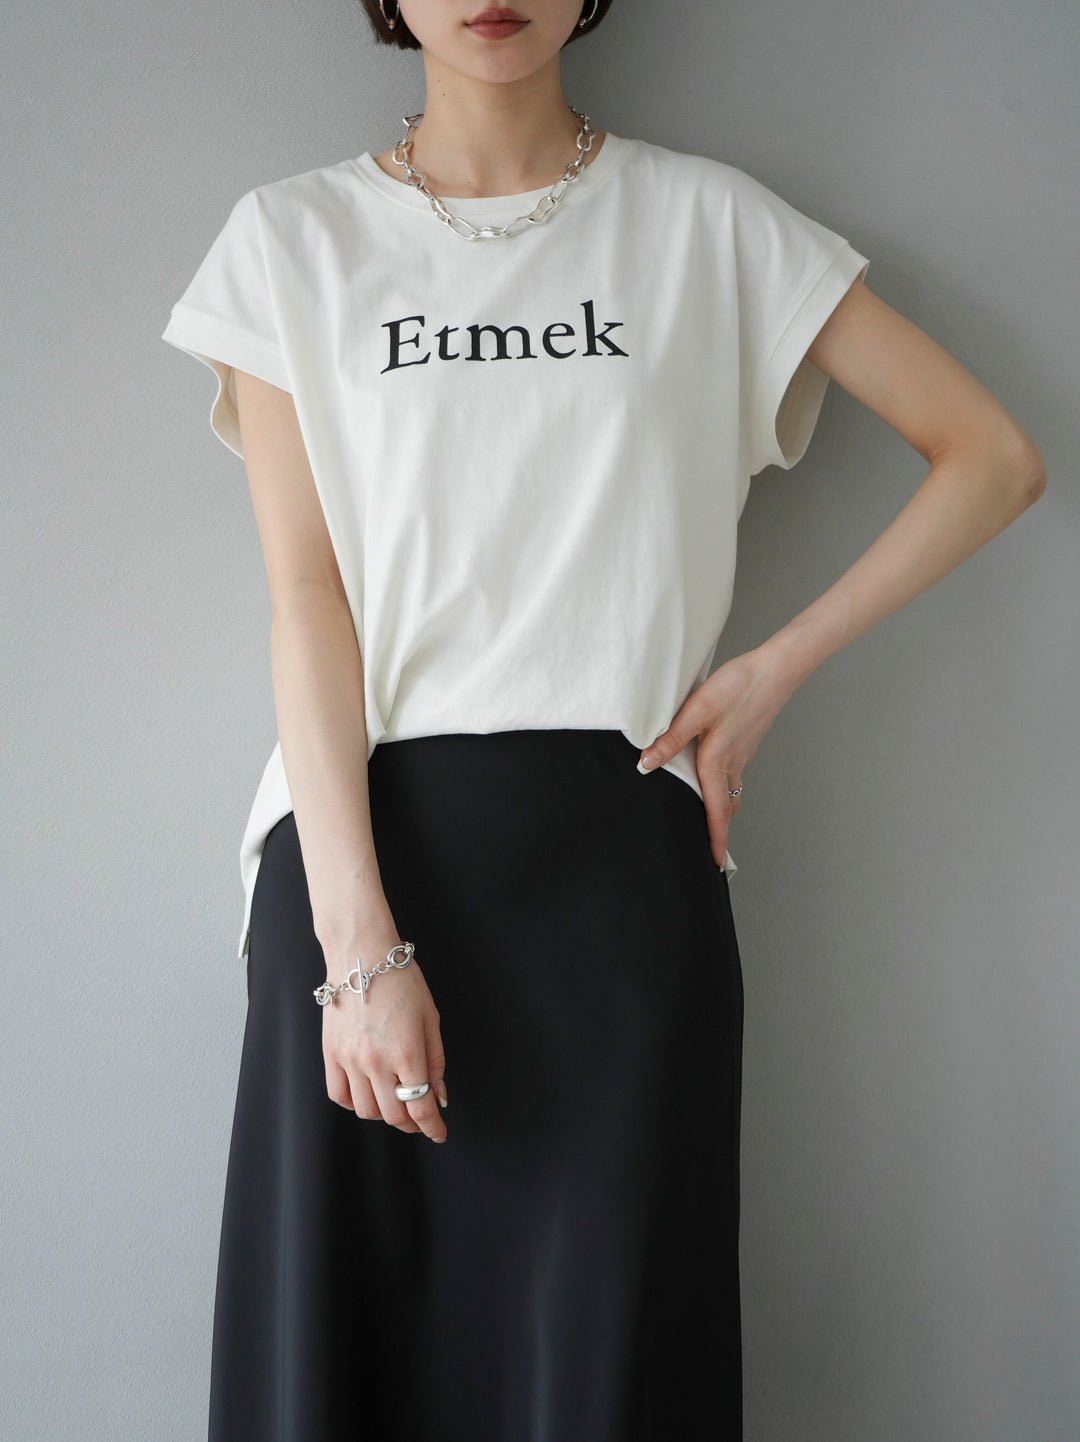 [SET]'Etmek'プリントフレンチスリーブTシャツ+選べるネックレスセット(2set)